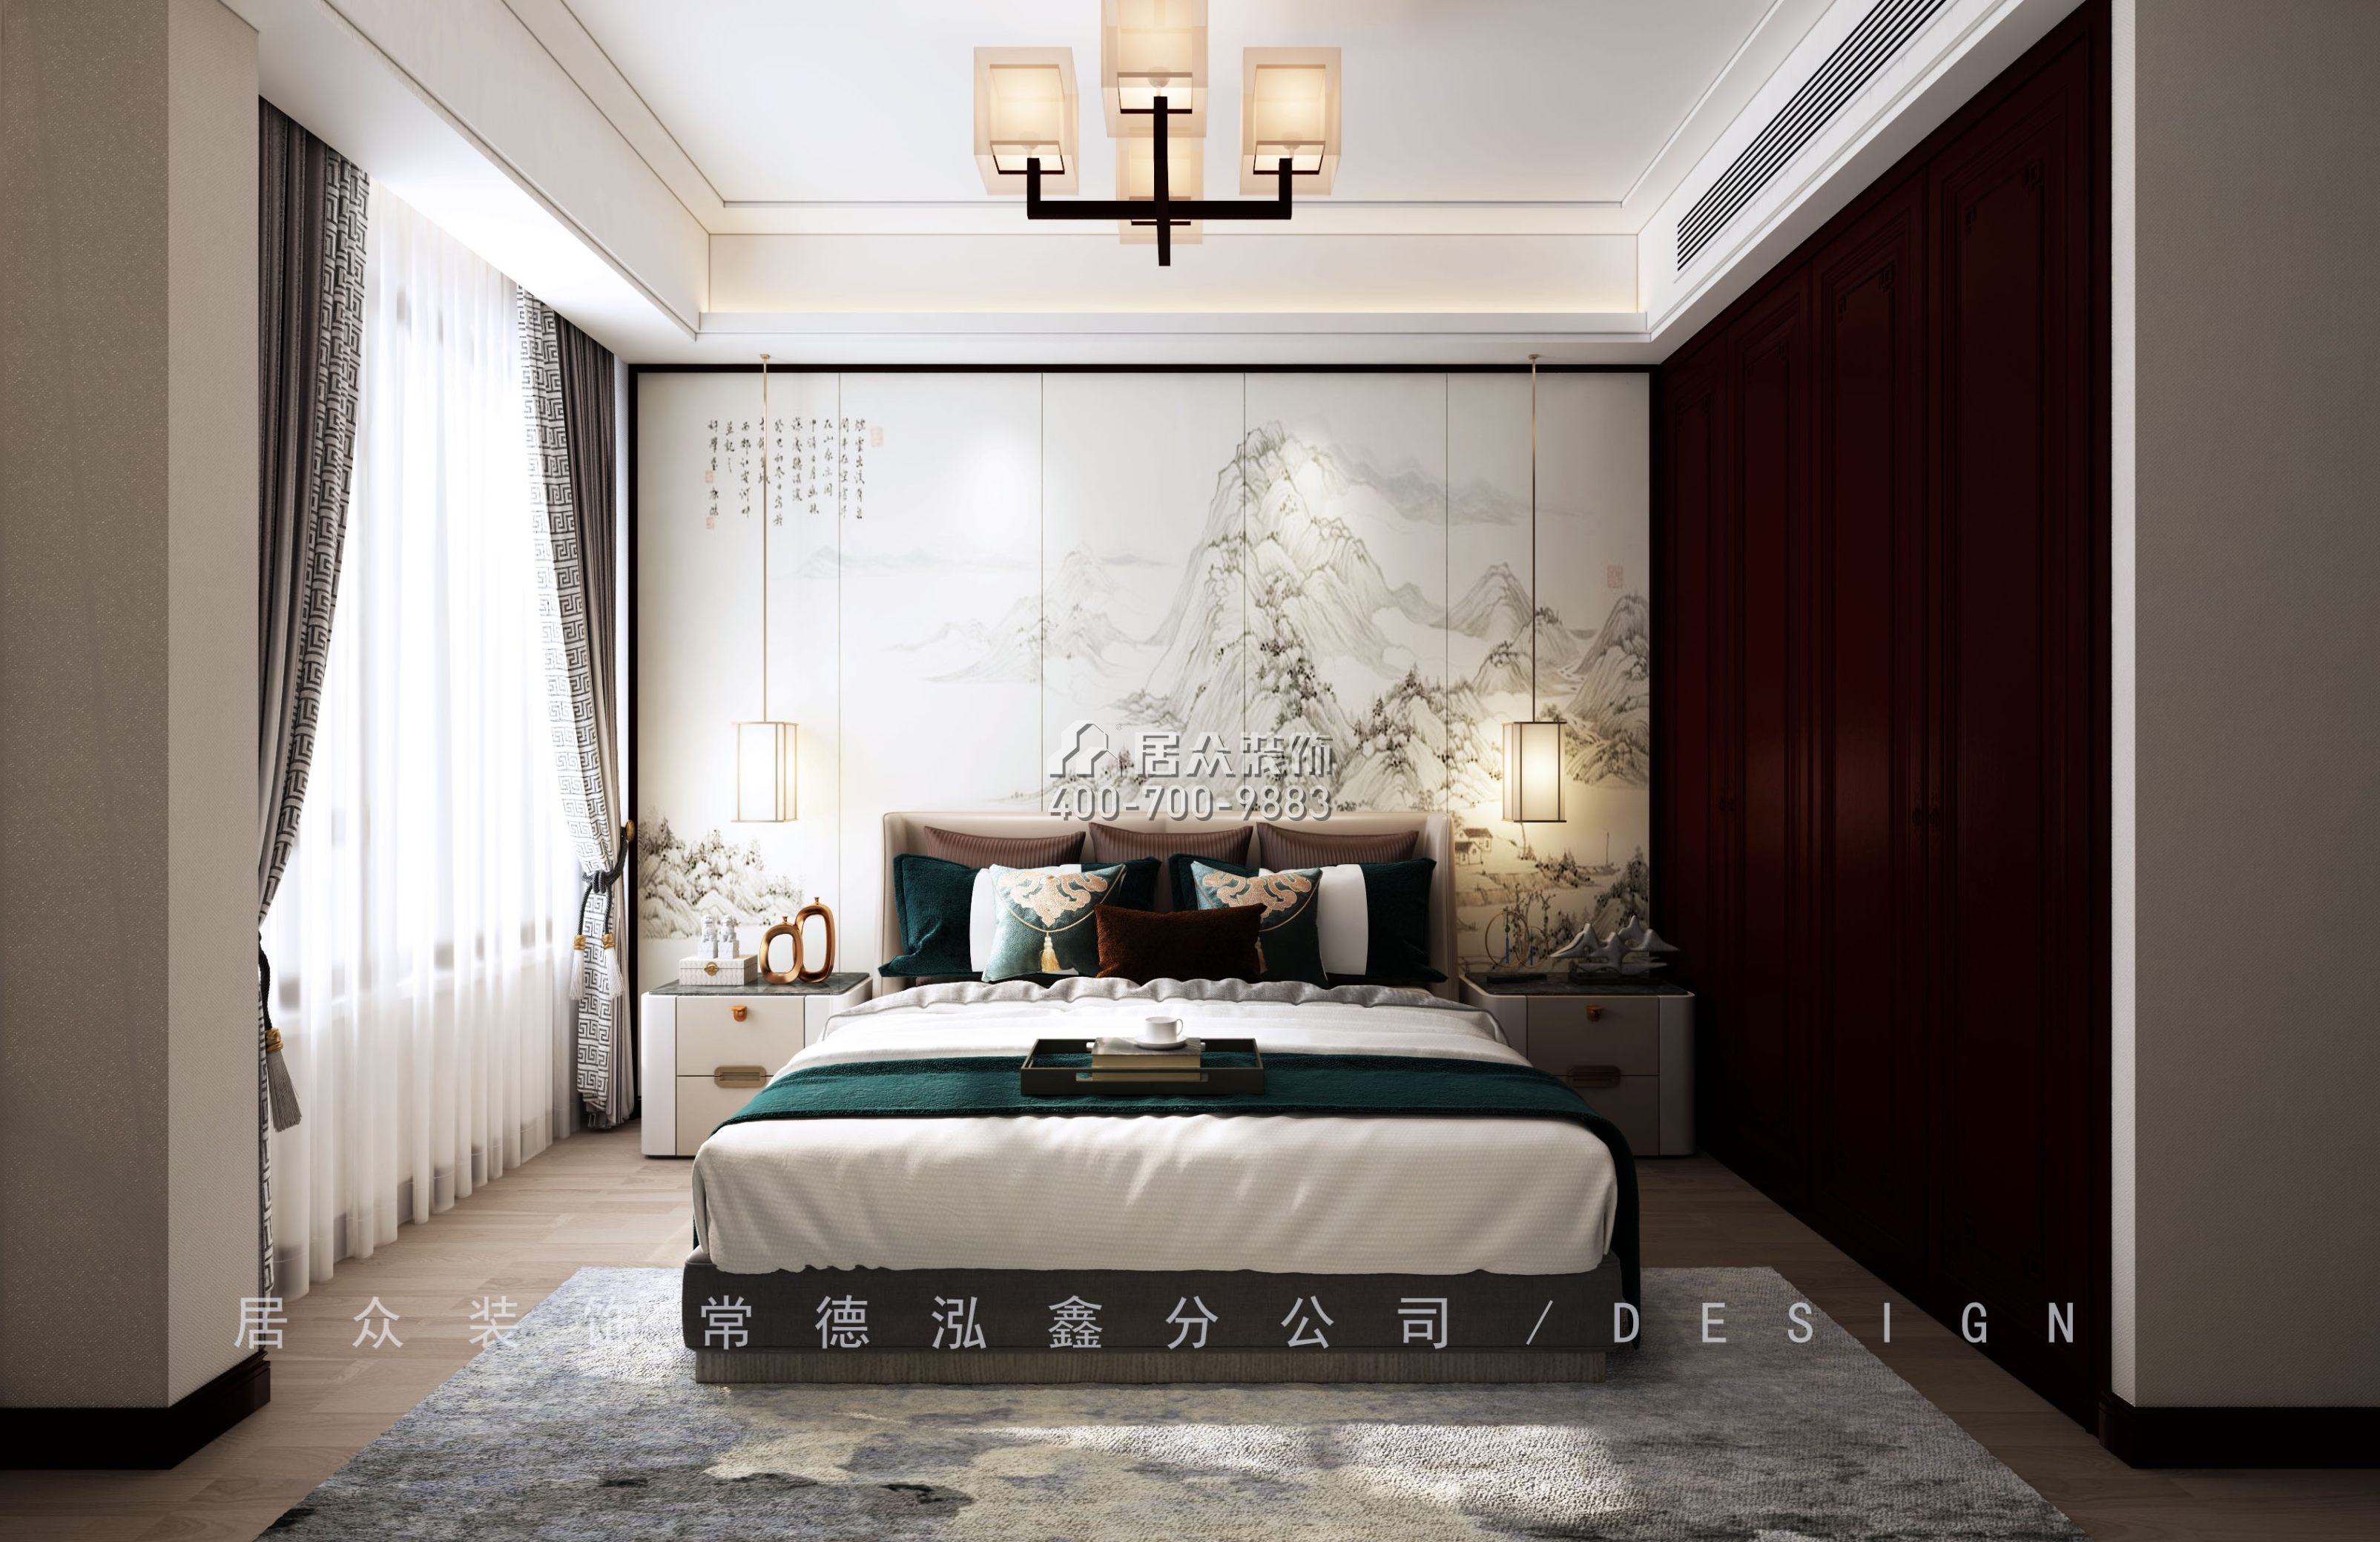 天鹅湾3期450平方米中式风格别墅户型卧室装修效果图